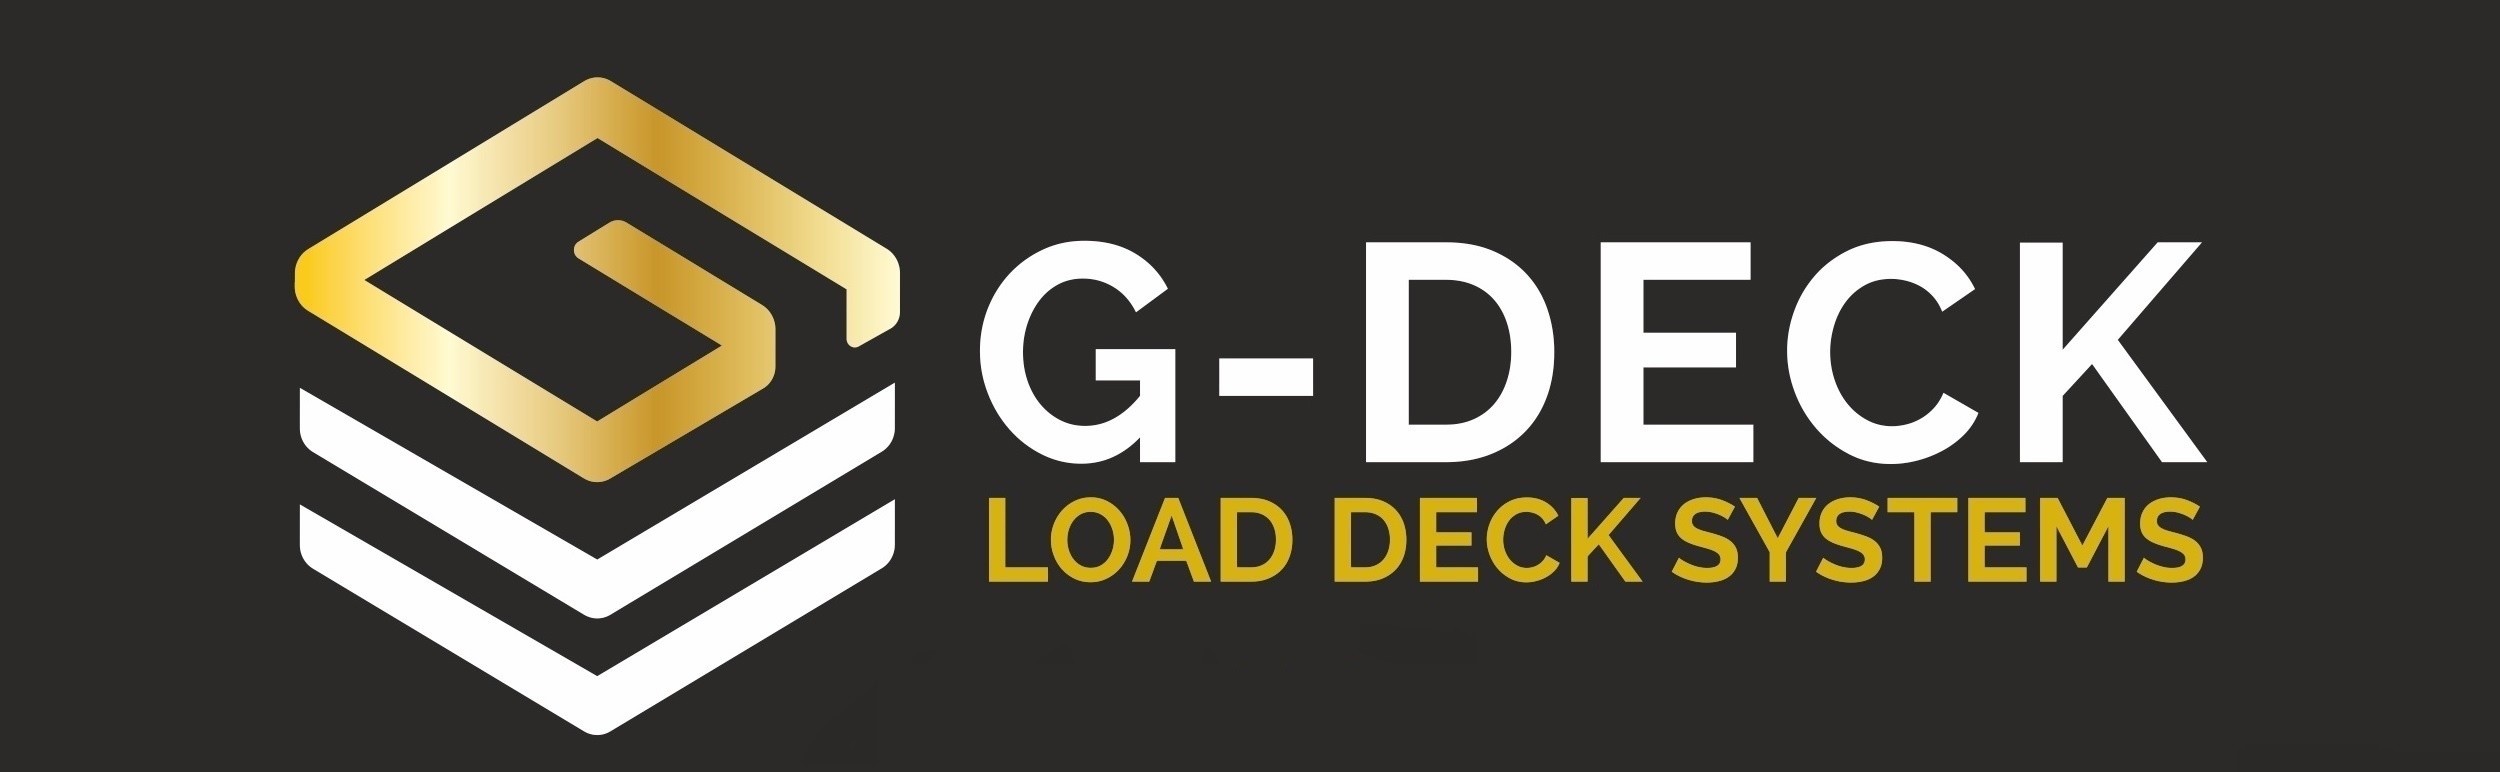 G-DECK logo